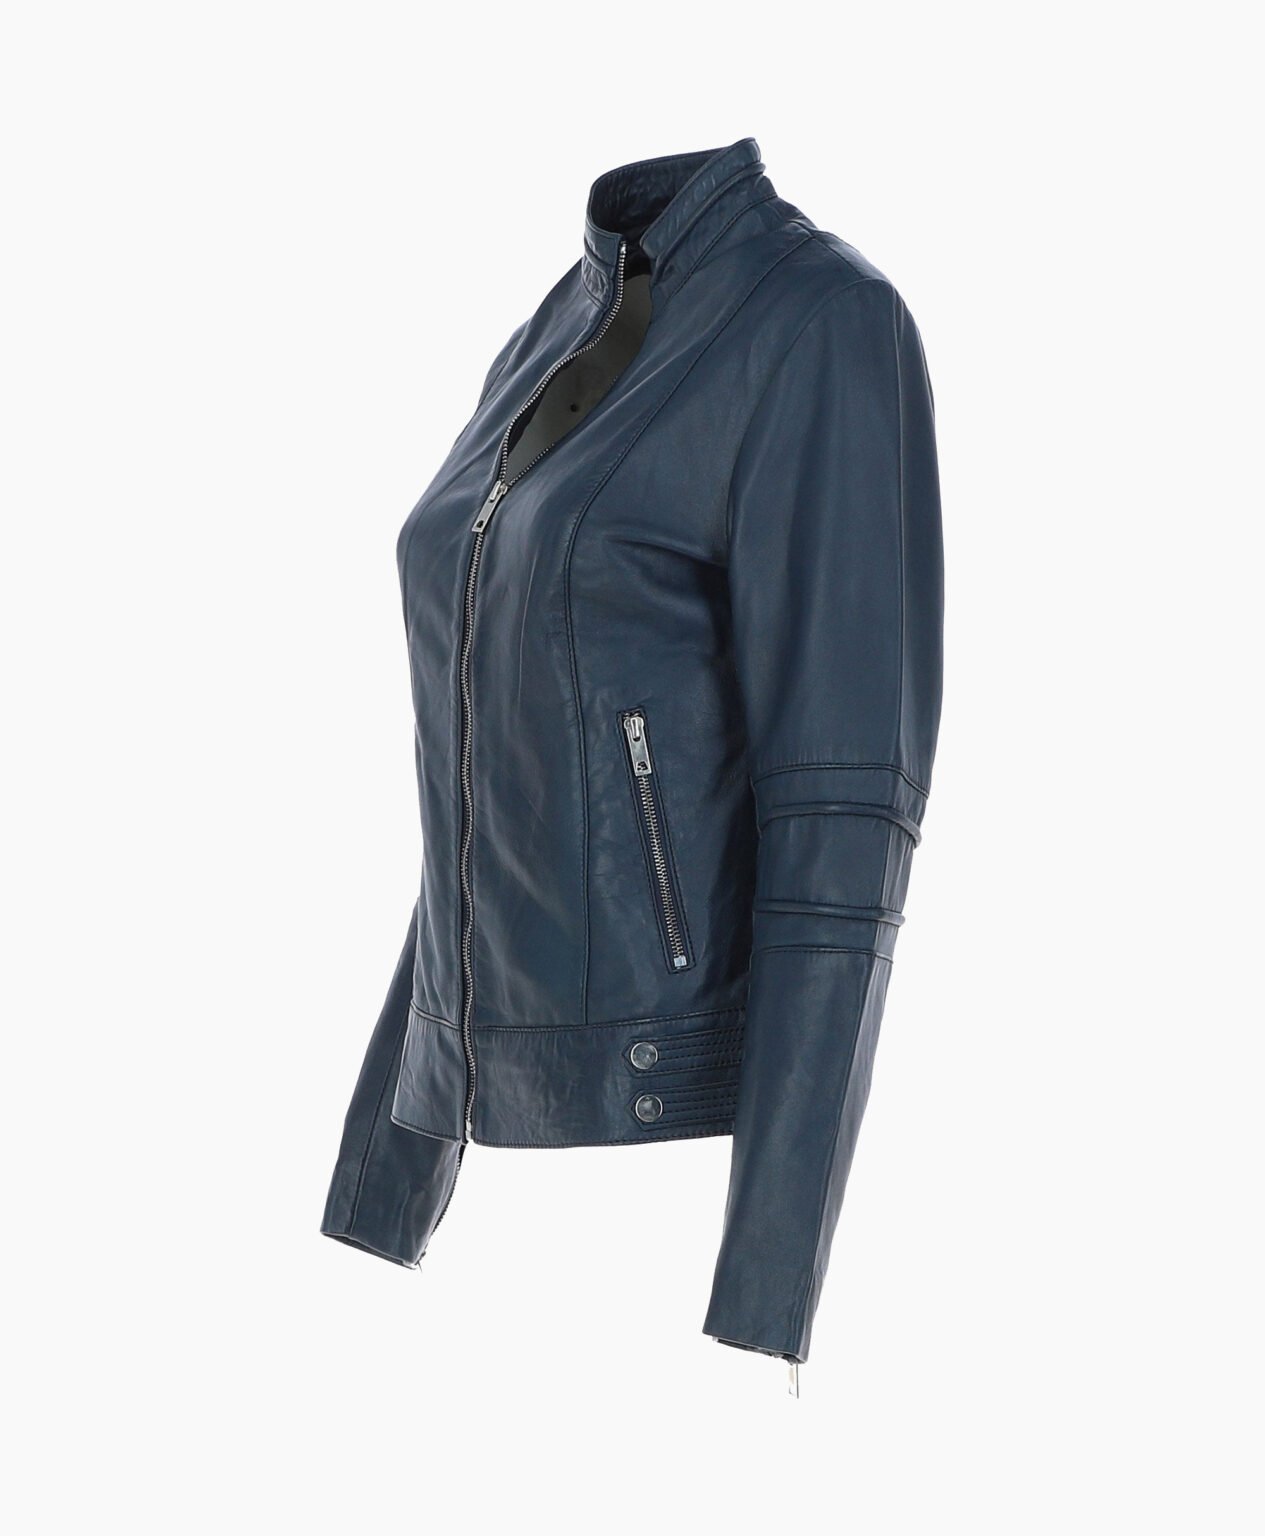 vogue-jacket-leather-biker-jacket-navy-lahaina-image201